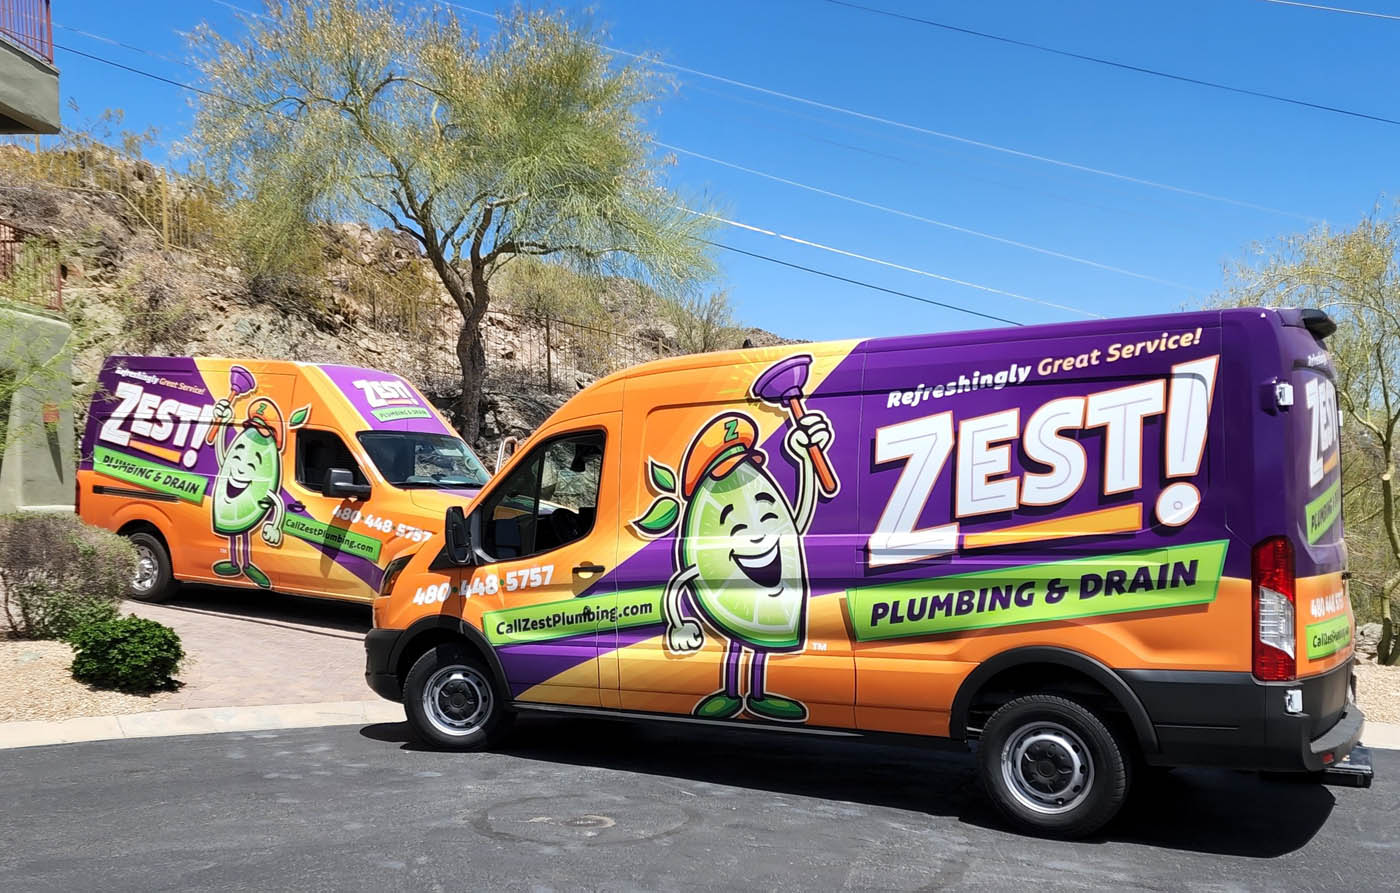 Local Zest Plumbing & Drain plumbing trucks in Mesa / Tempe, AZ.